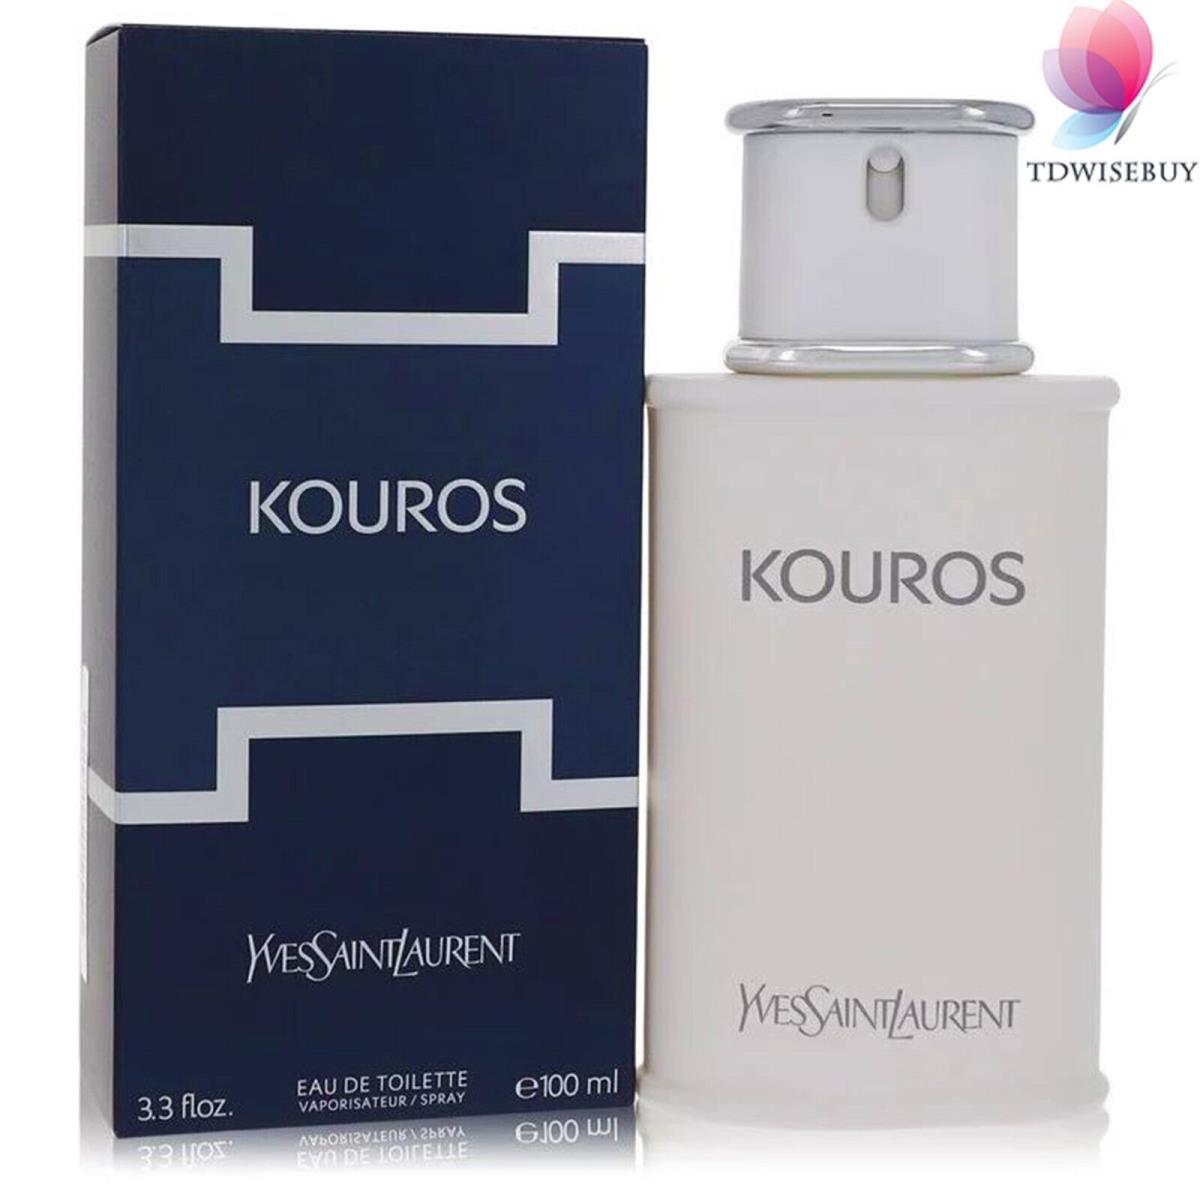 Kouros Cologne Men Perfume by Yves Saint Laurent Eau De Toilette Spray 3.4 oz